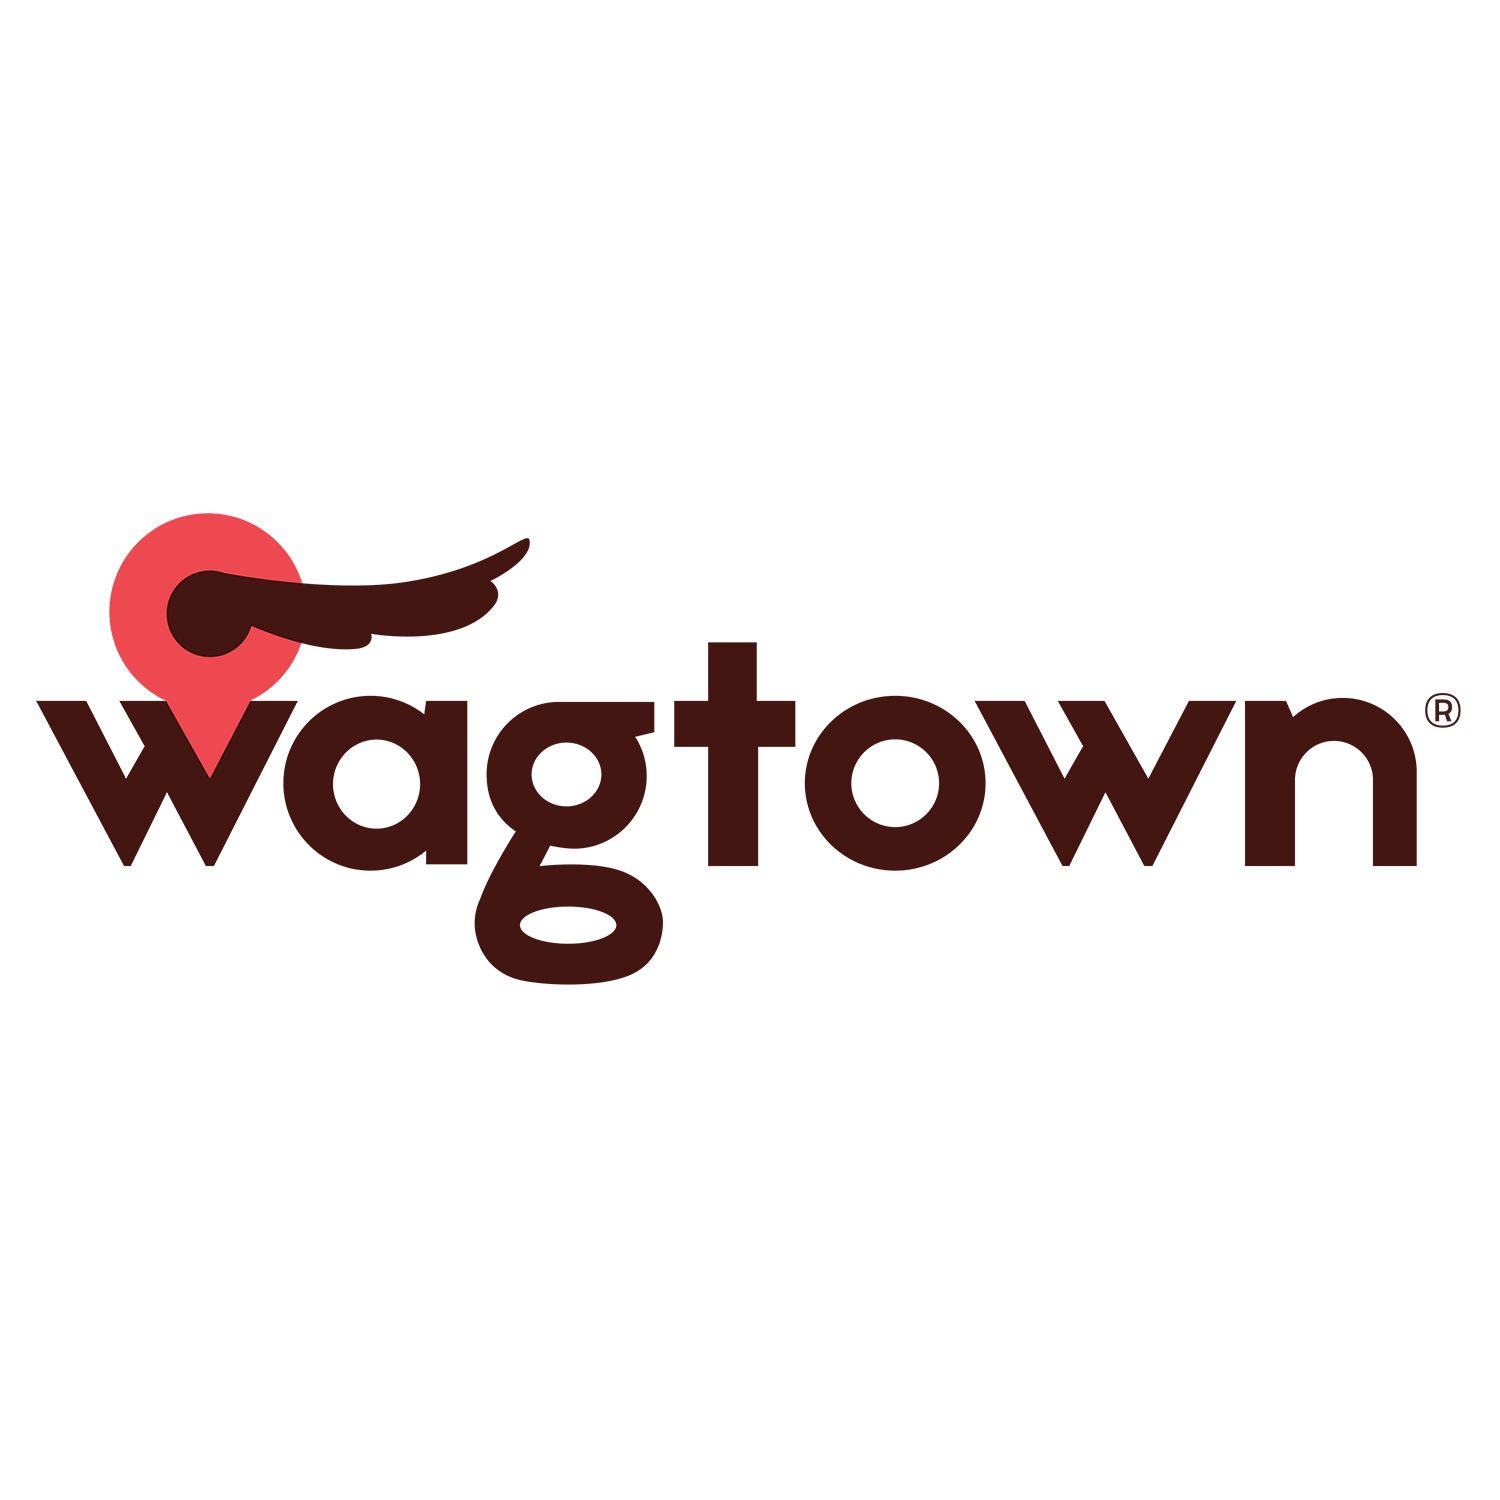 Wagtown